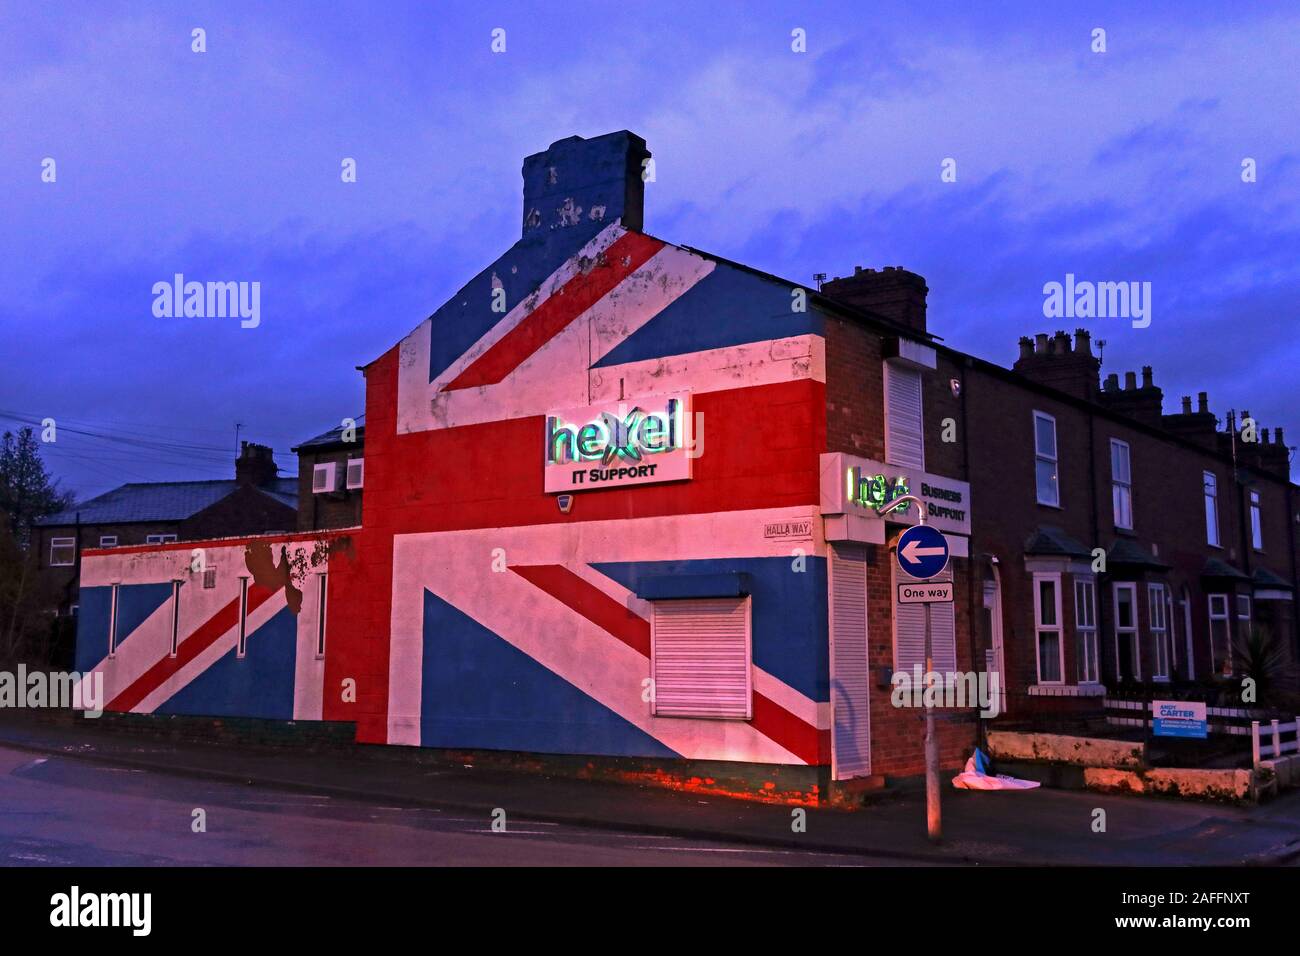 Royaliste, drapeau syndical, peint sur Hexel IT support, Latchford, 15 Wash Lane, Warrington, Cheshire, Angleterre, Royaume-Uni, WA4 1HS Banque D'Images